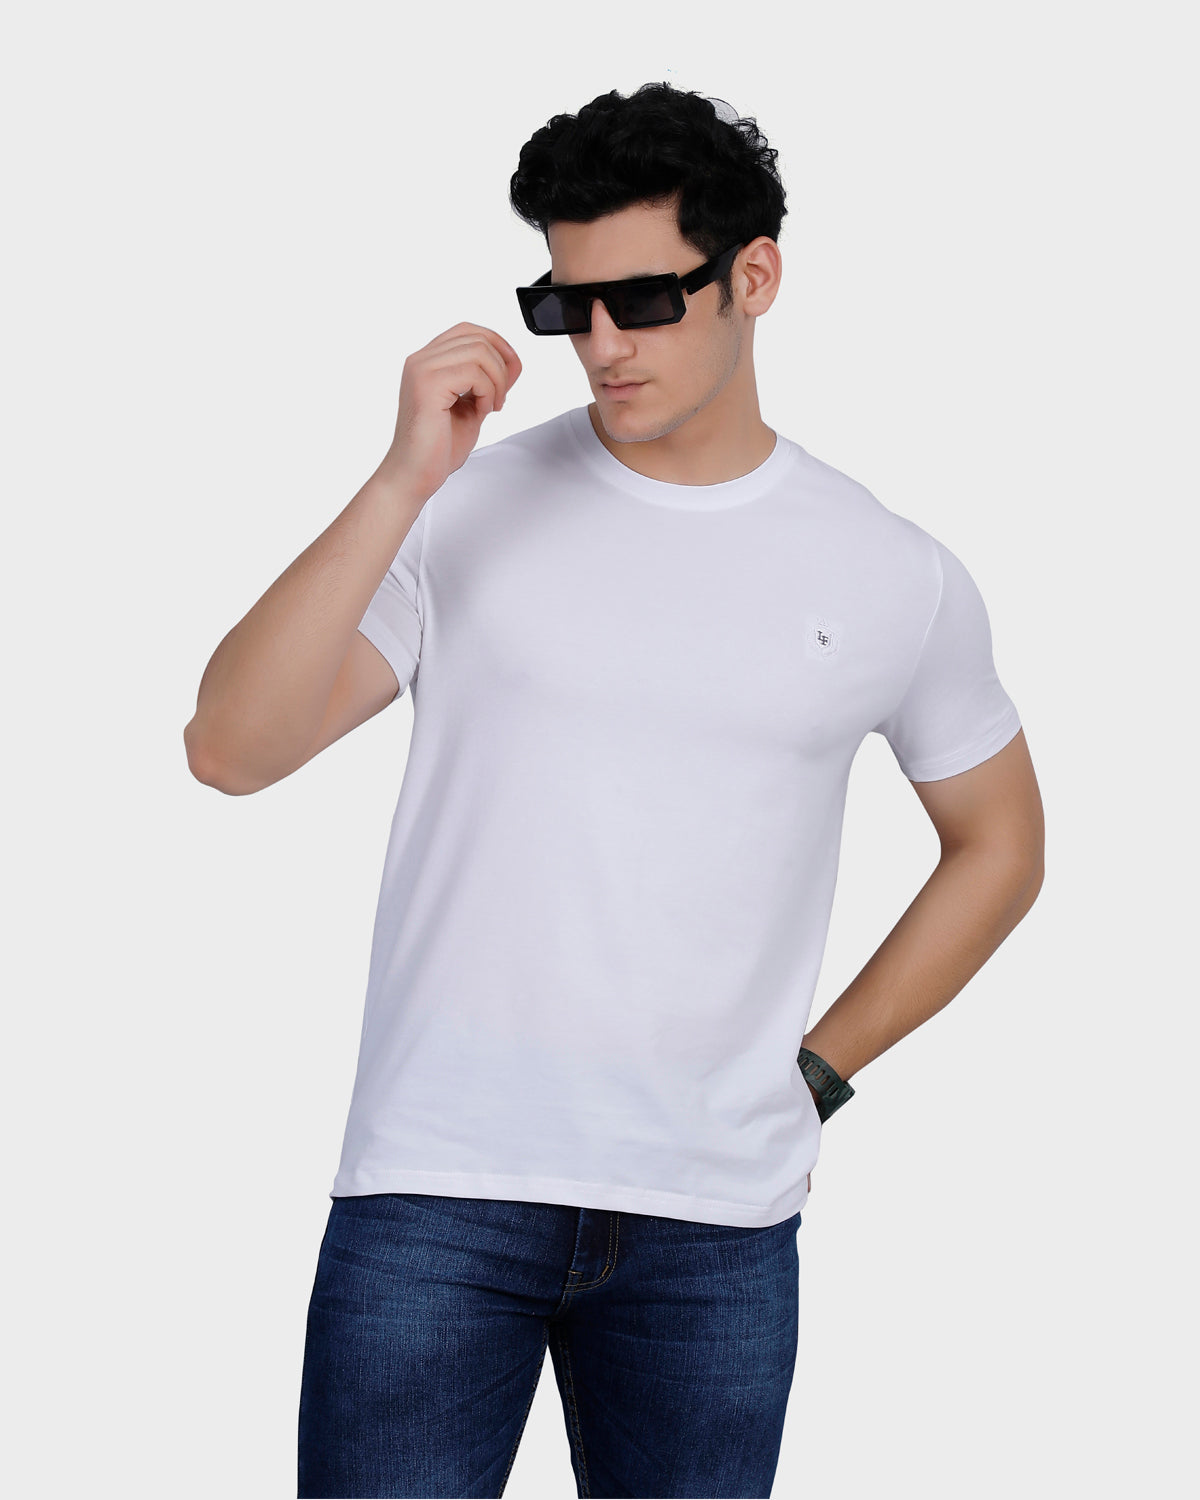 Men White Solid Round Neck T-Shirts